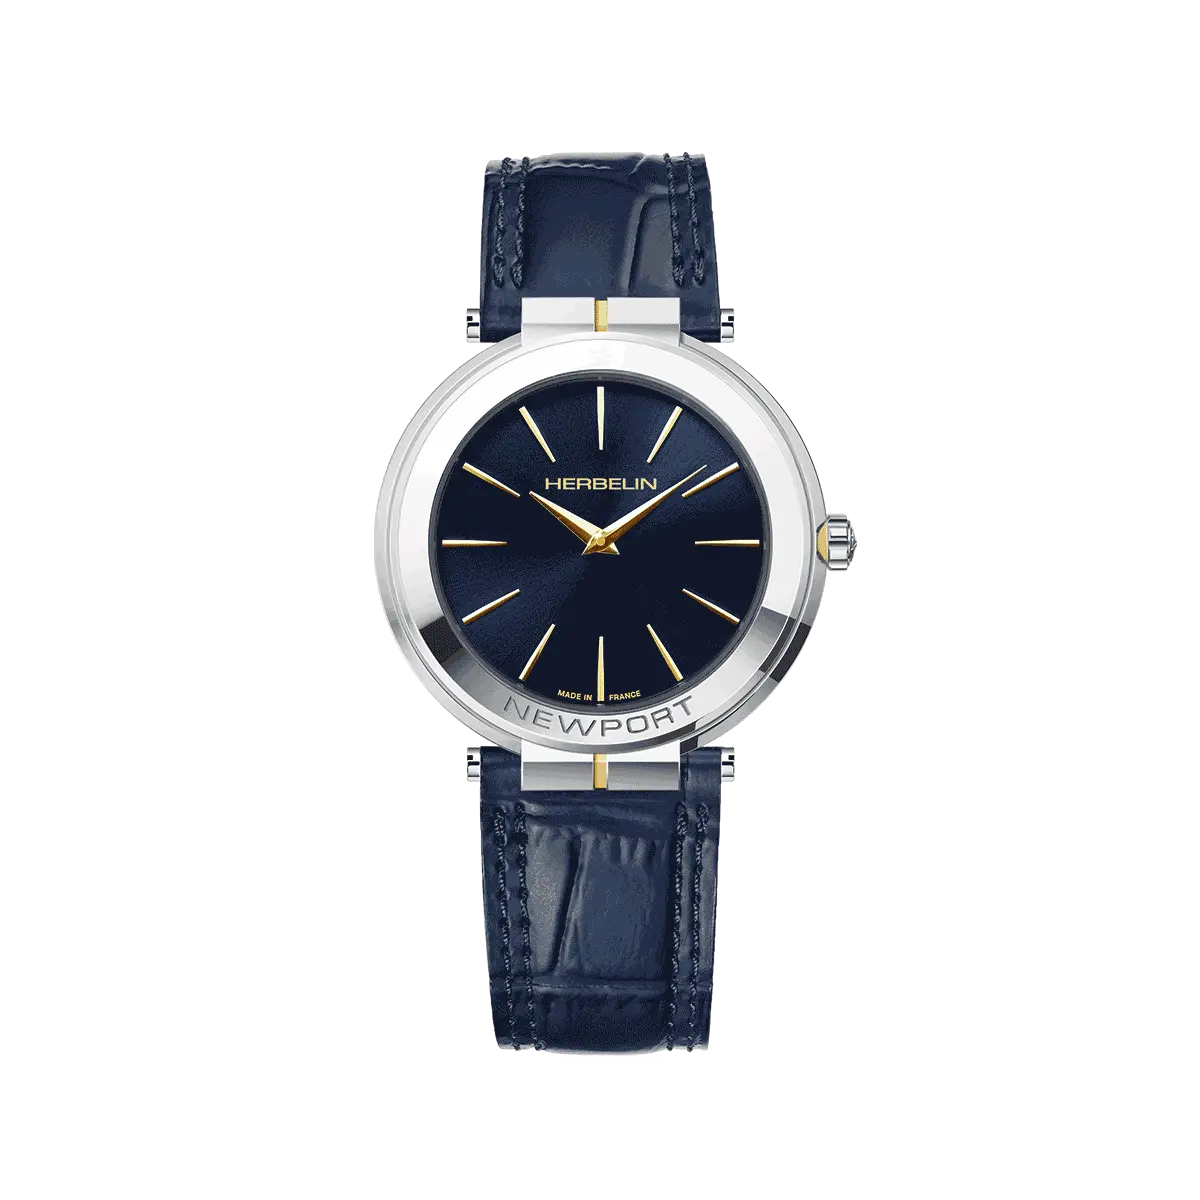 Michel Herbelin Newport Slim Watch - Navy Blue